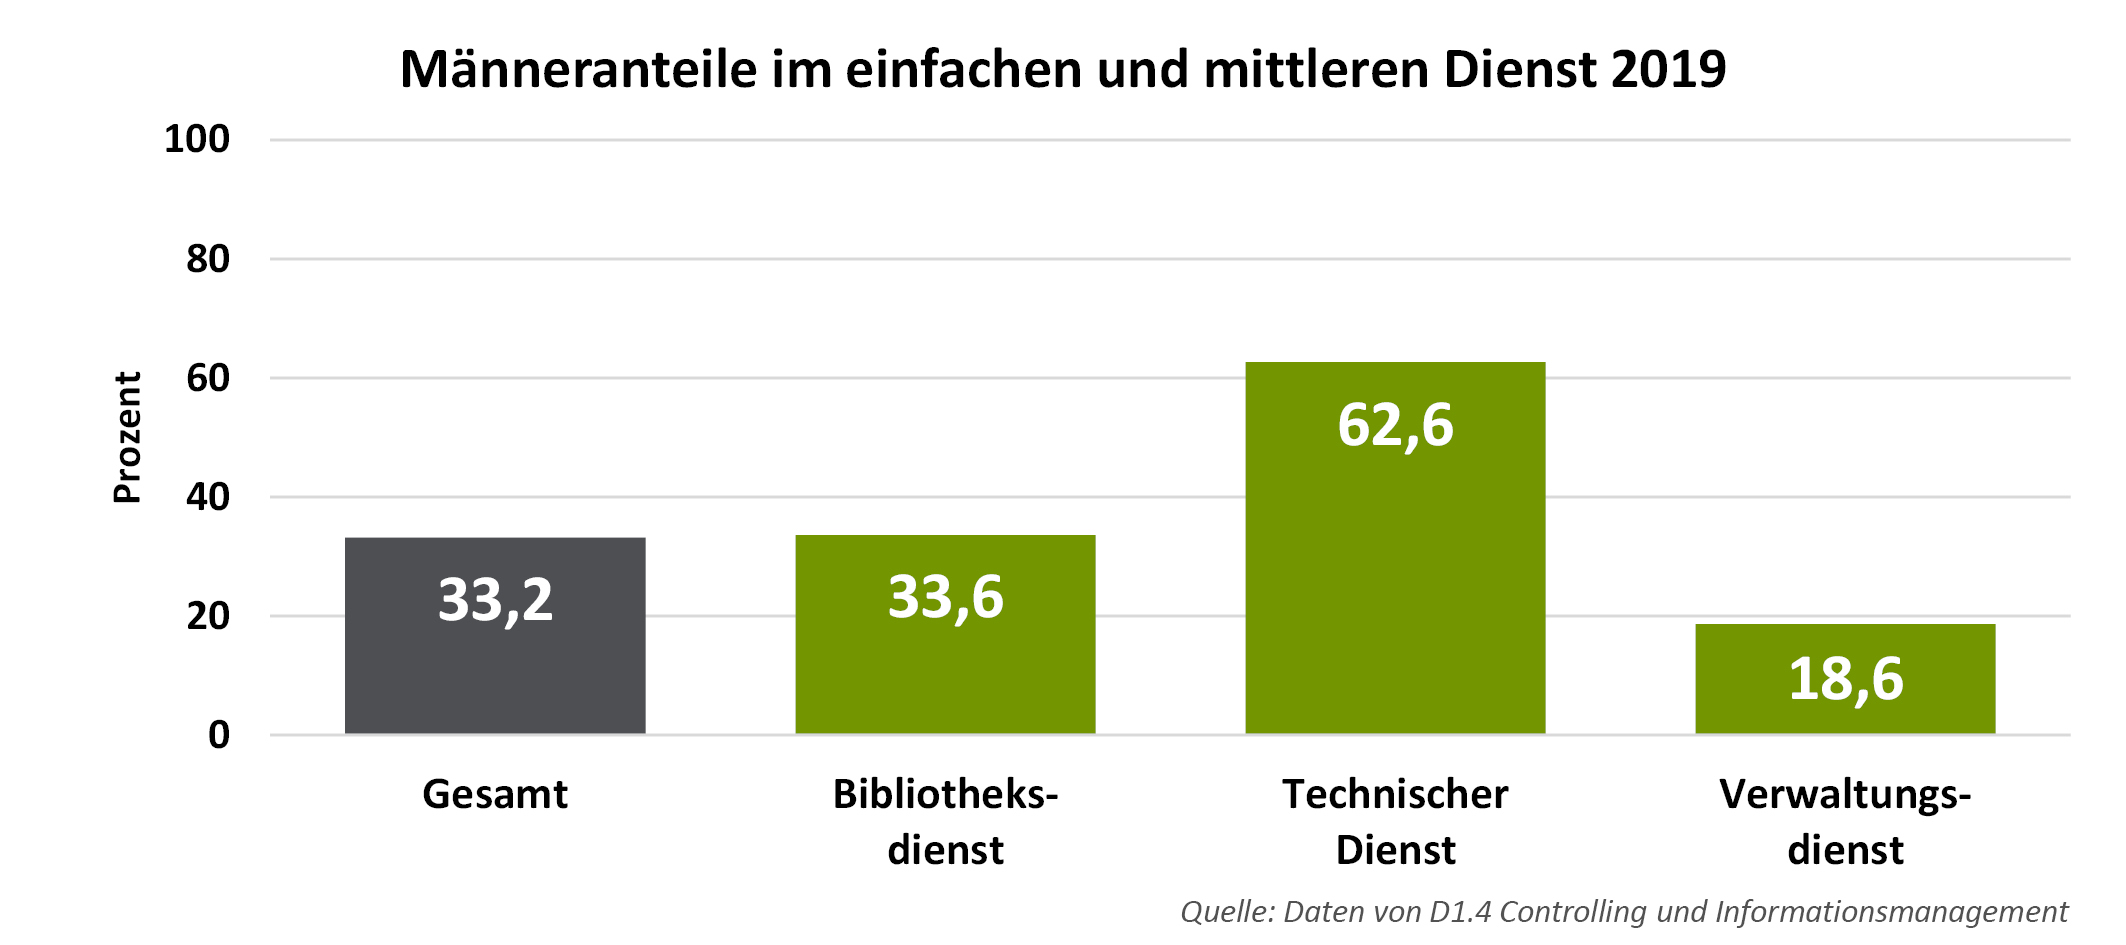 Männeranteile im einfachen und mittleren Dienst an der Universität Freiburg 2019. Gesamt: 33,2 %. Im Bibliotheksdienst: 33,6 %. Im technischen Dienst: 62,6 %. Im Verwaltungsdienst: 18,6 %. 